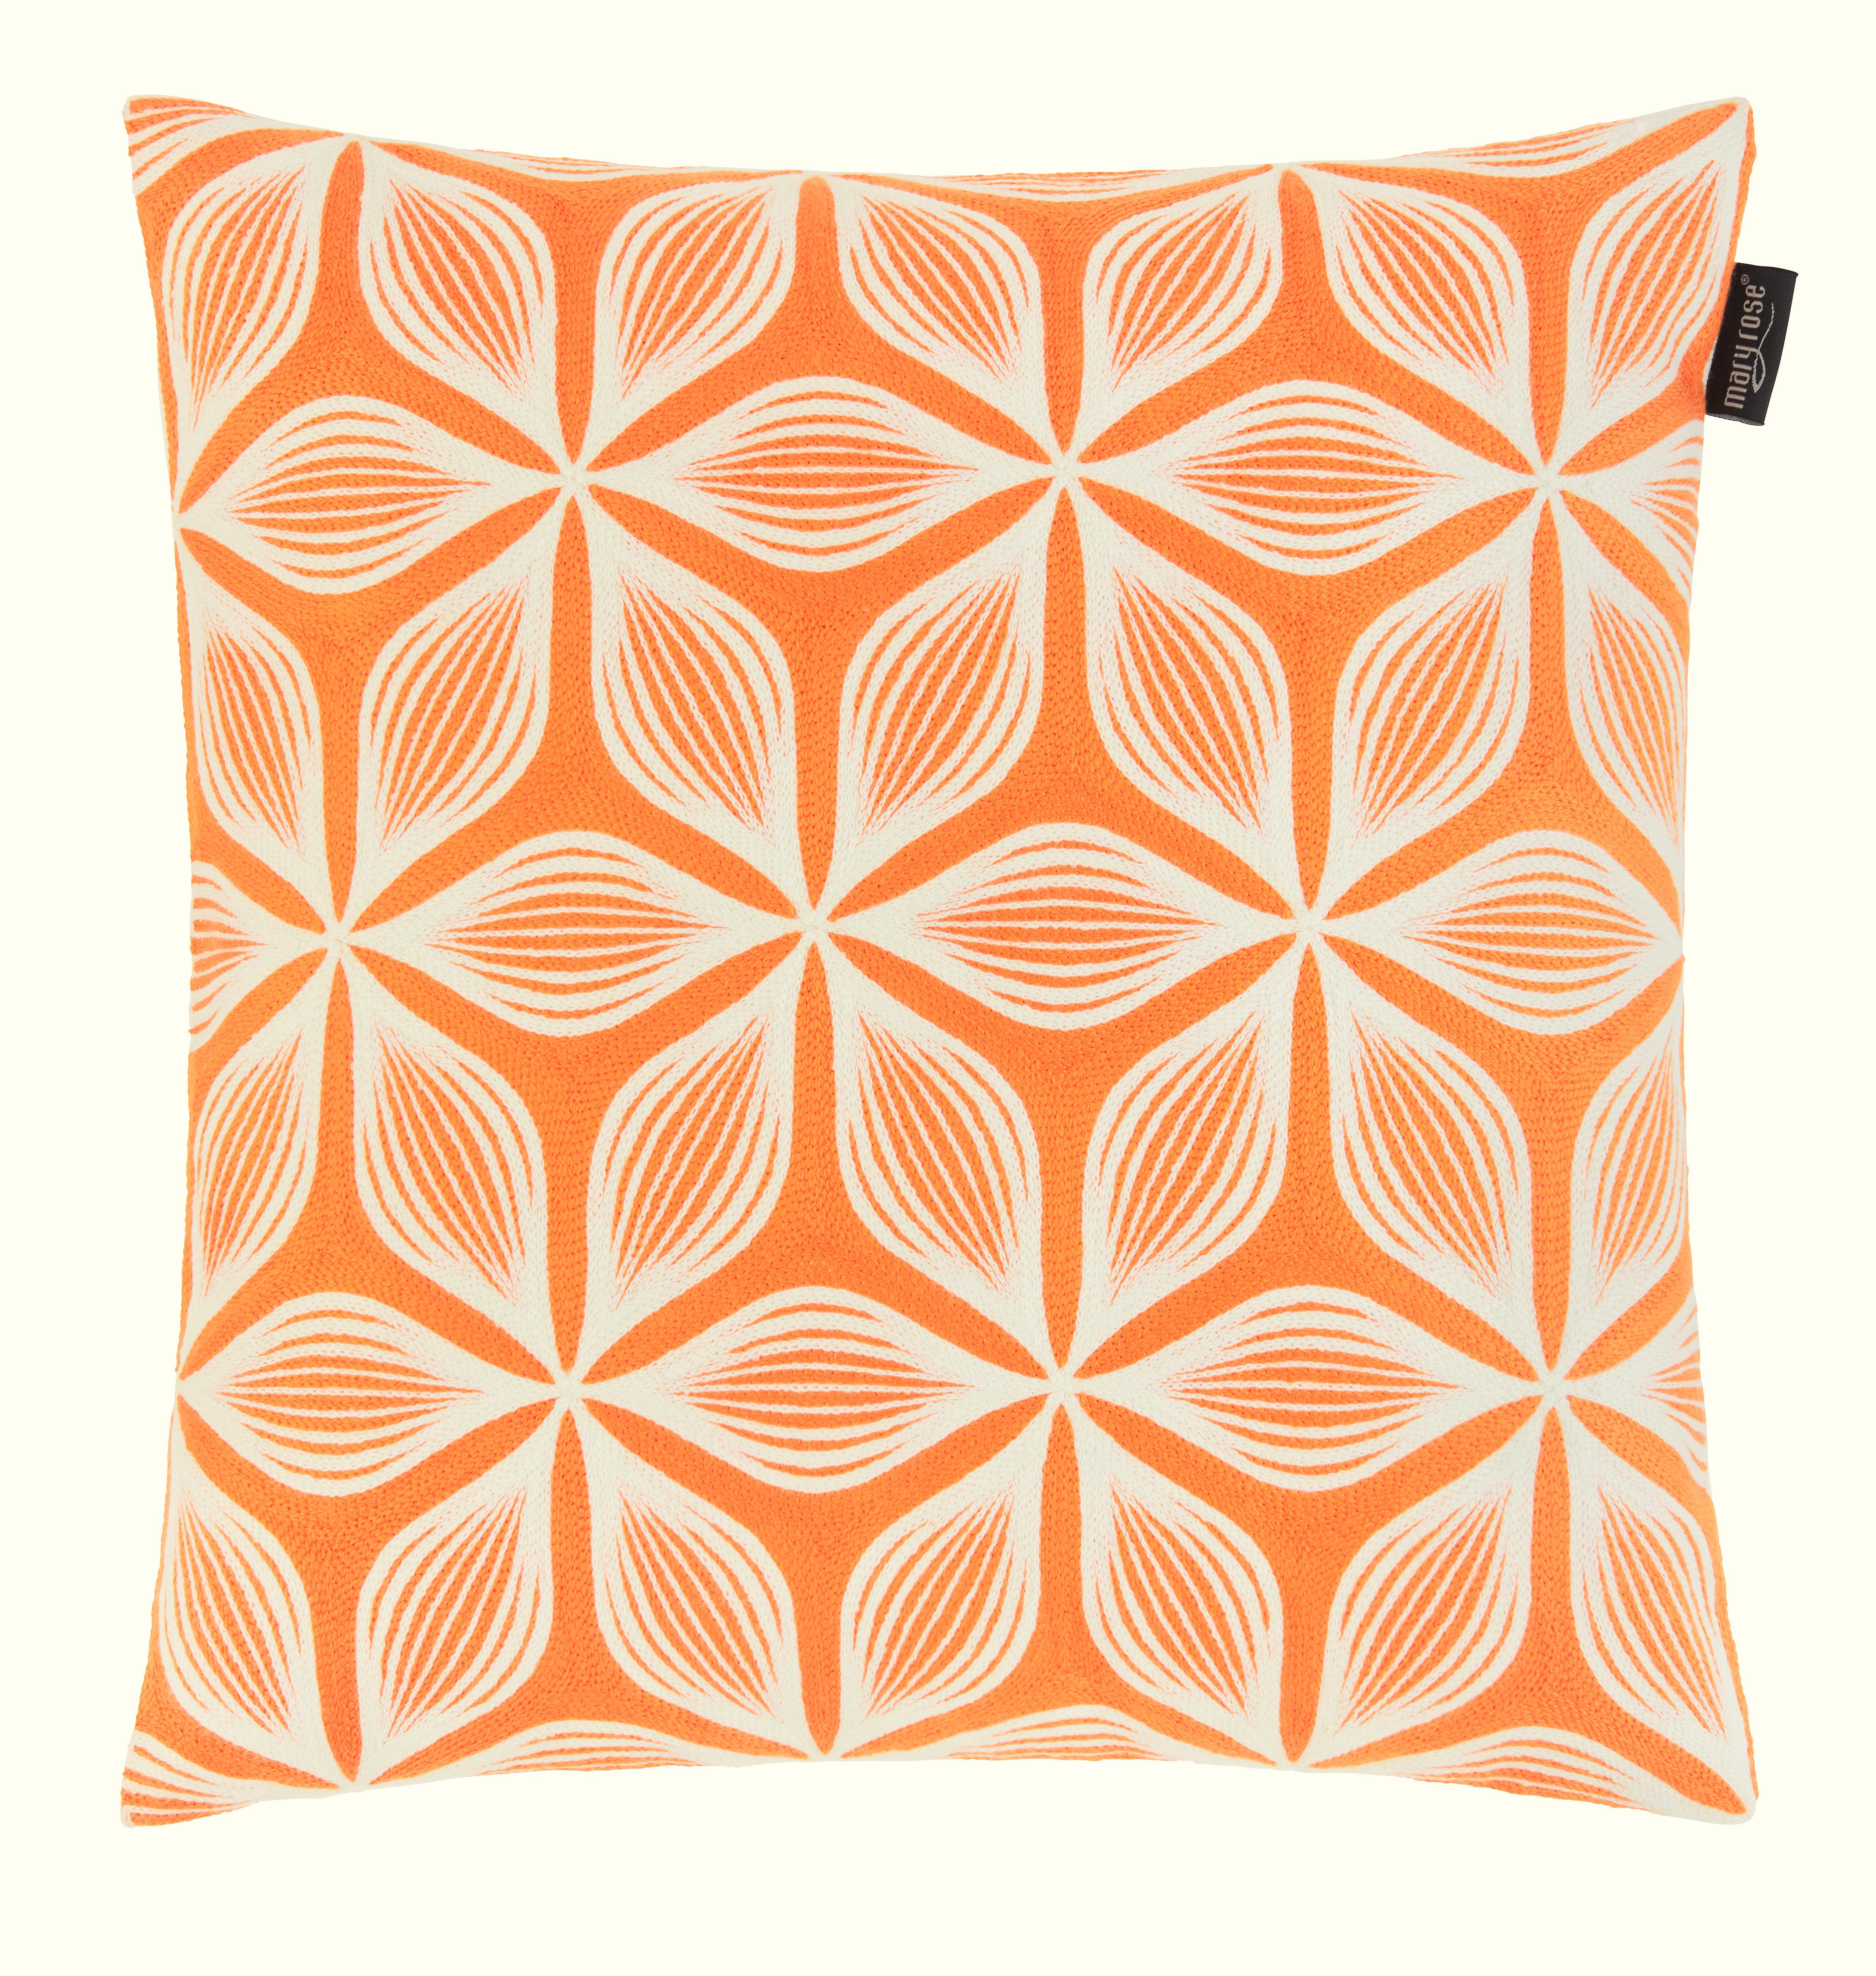 Zierkissen Olivia in Orange/Weiß ca. 45x45cm - Orange/Weiß, MODERN, Textil (45/45cm) - Mary's